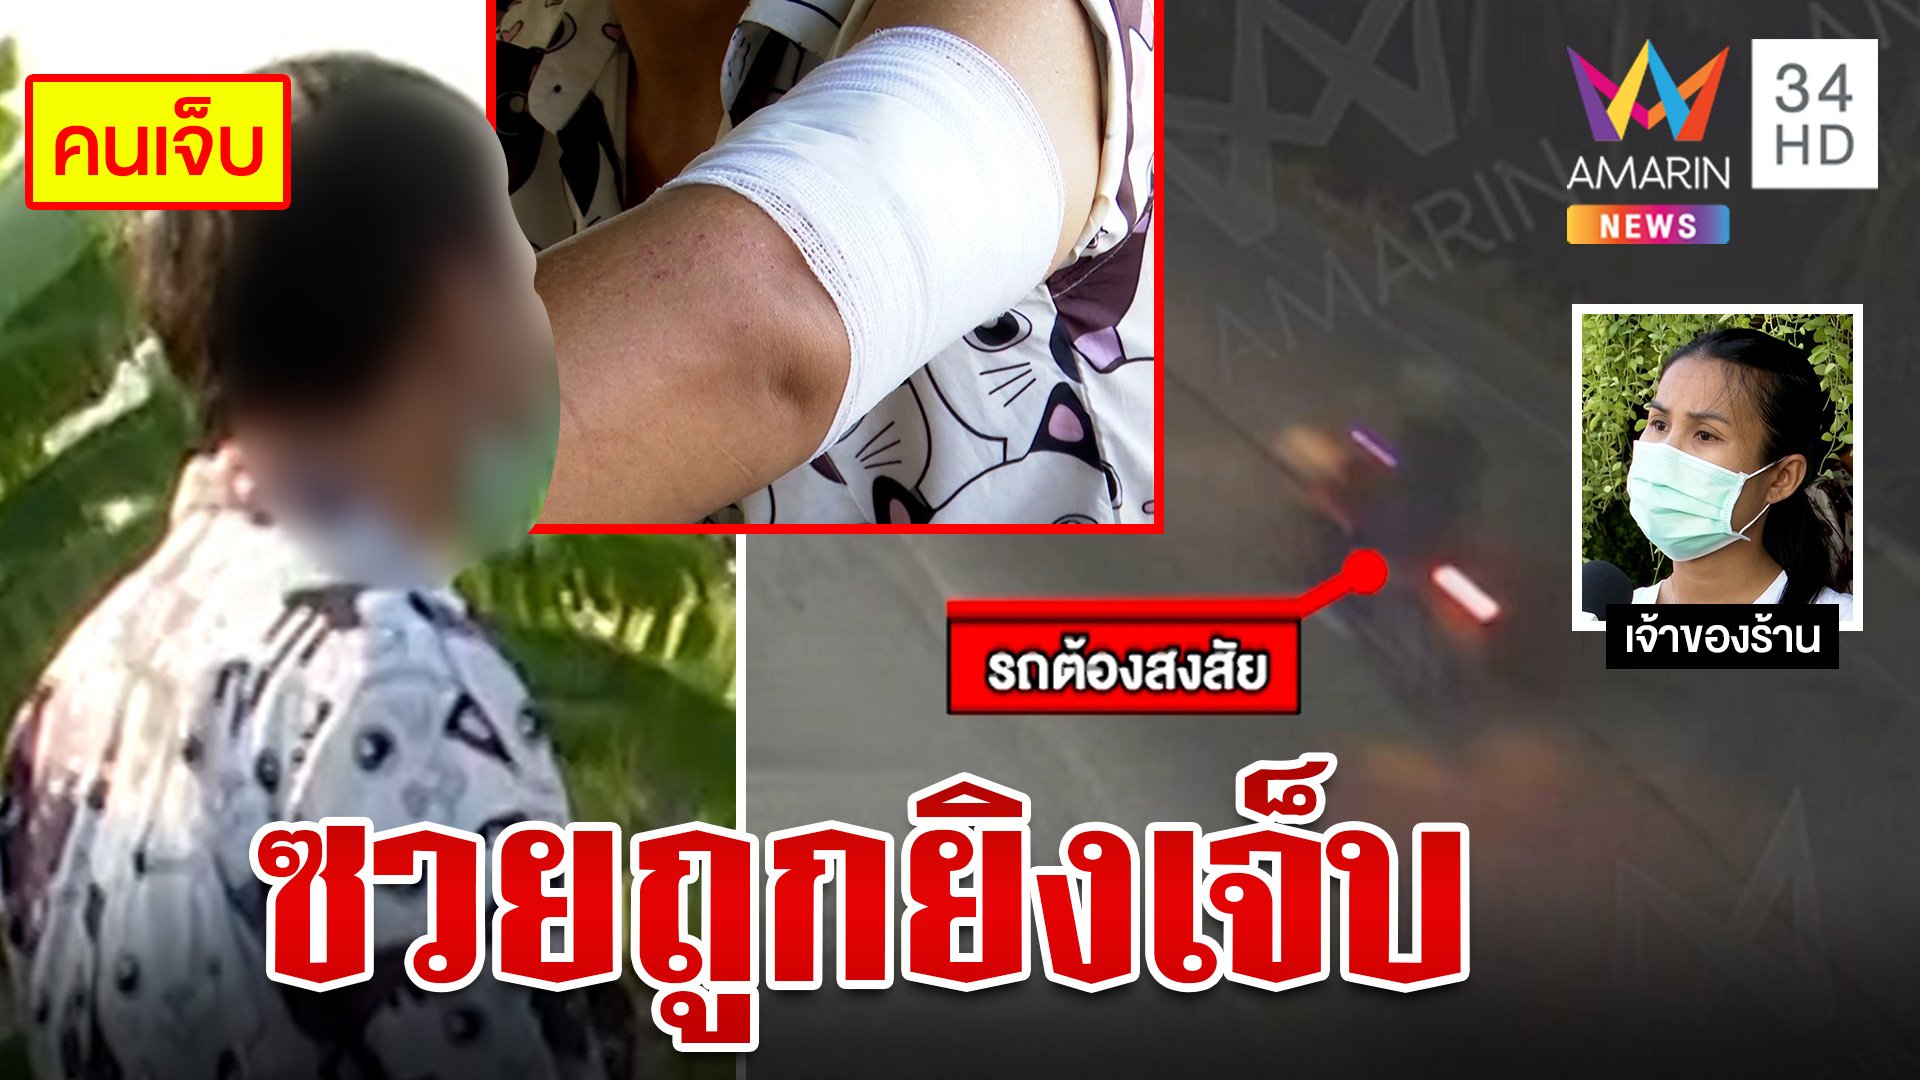 วัยรุ่นกุนขแมร์สาดกระสุนใส่อริ หนุ่มไทยไปหาเพื่อนถูกลูกหลง | ทุบโต๊ะข่าว | 28 มี.ค. 66 | AMARIN TVHD34